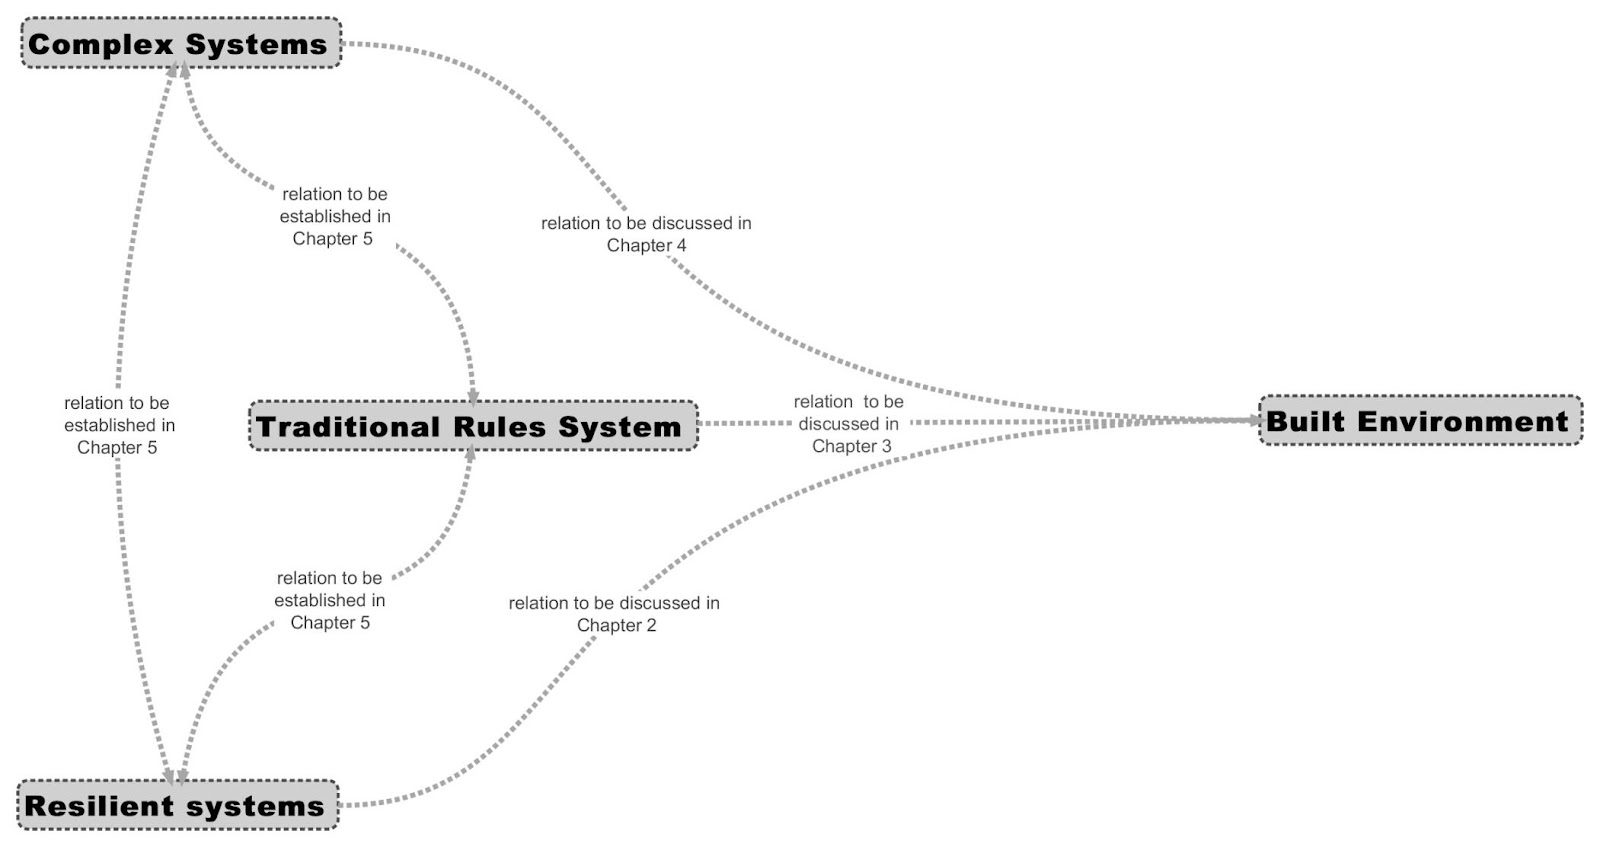 تنقسم الأنظمة الى نوعين انظمة أساسية وانظمة عامة.